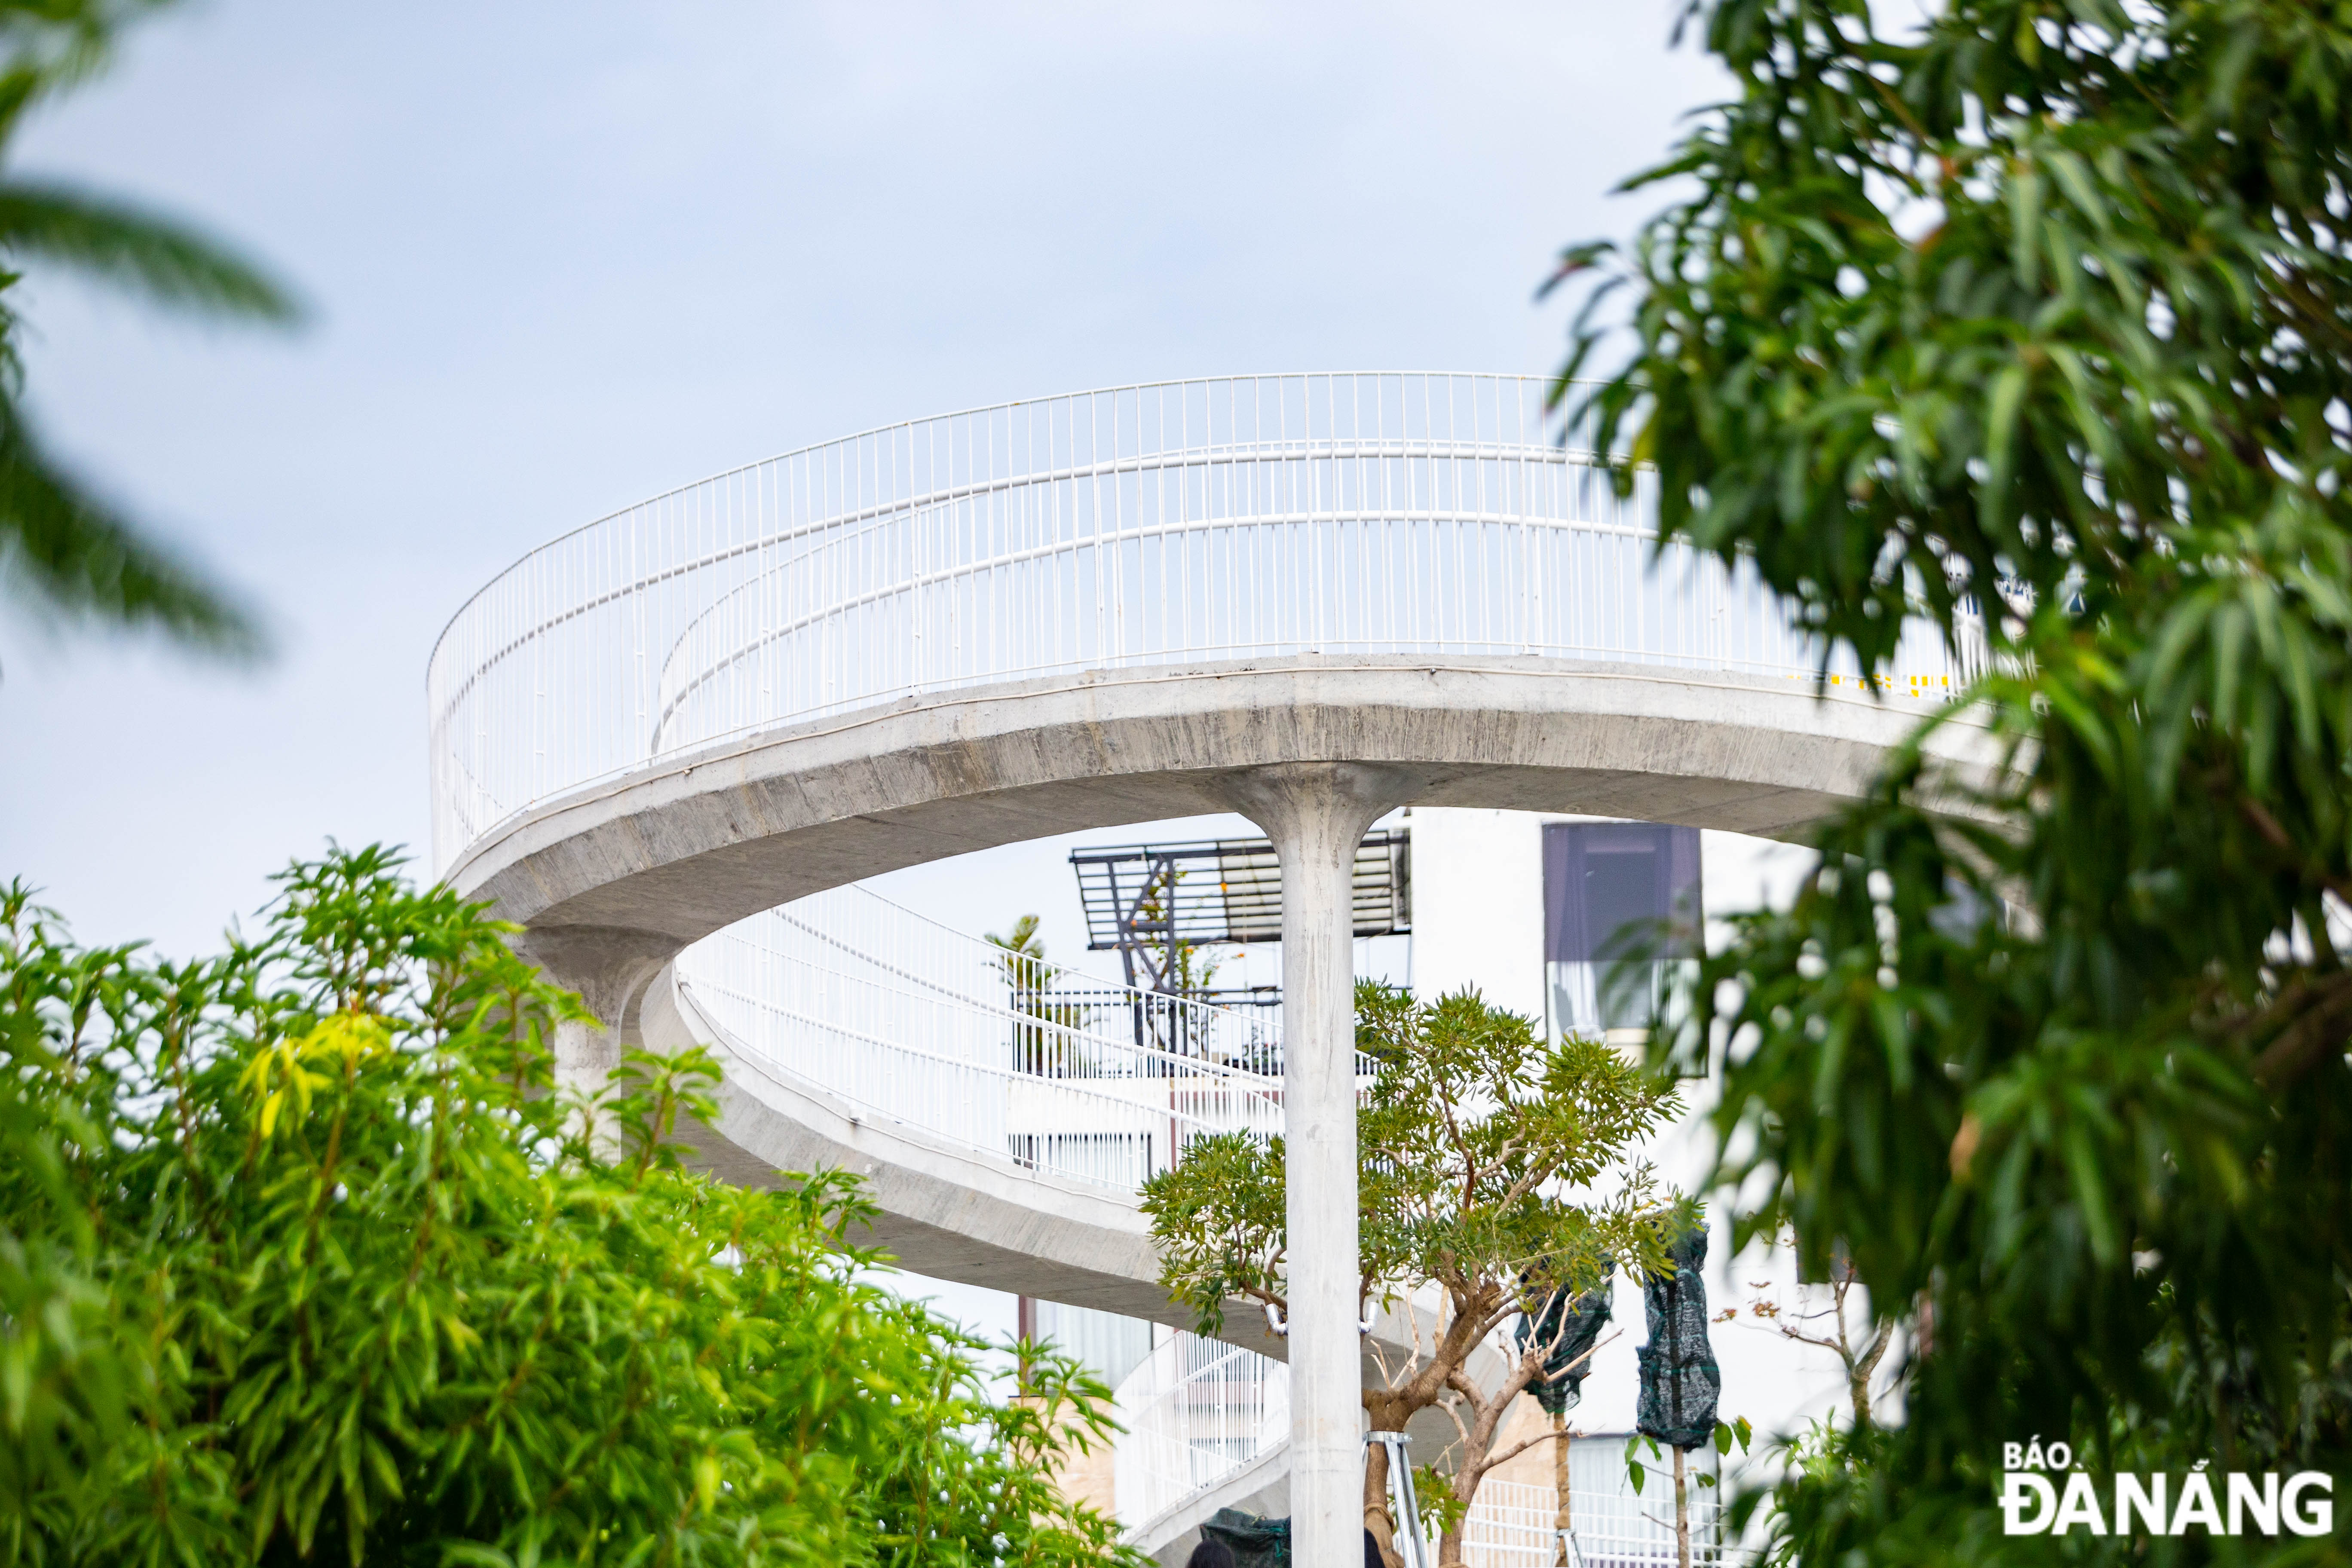 Công trình sẽ mang lại nguồn cảm hứng nghệ thuật, trở thành một điểm đến thu hút, tạo không gian công cộng xanh cho đô thị của Đà Nẵng.